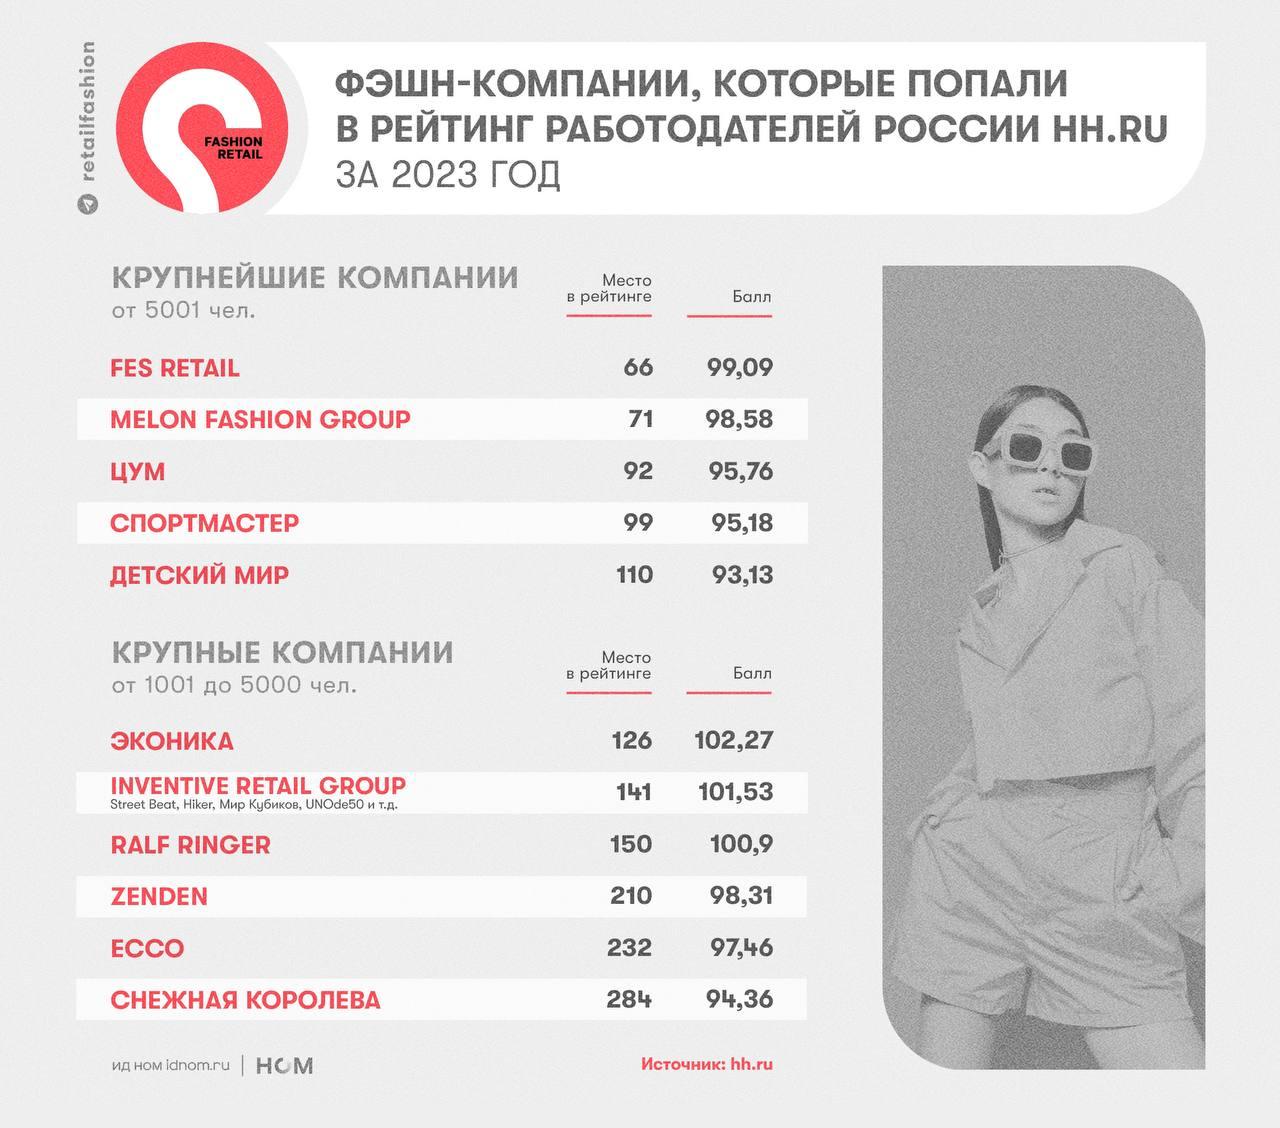 Рейтинг российских фэшн-компаний в качестве работодателей в 2023 году